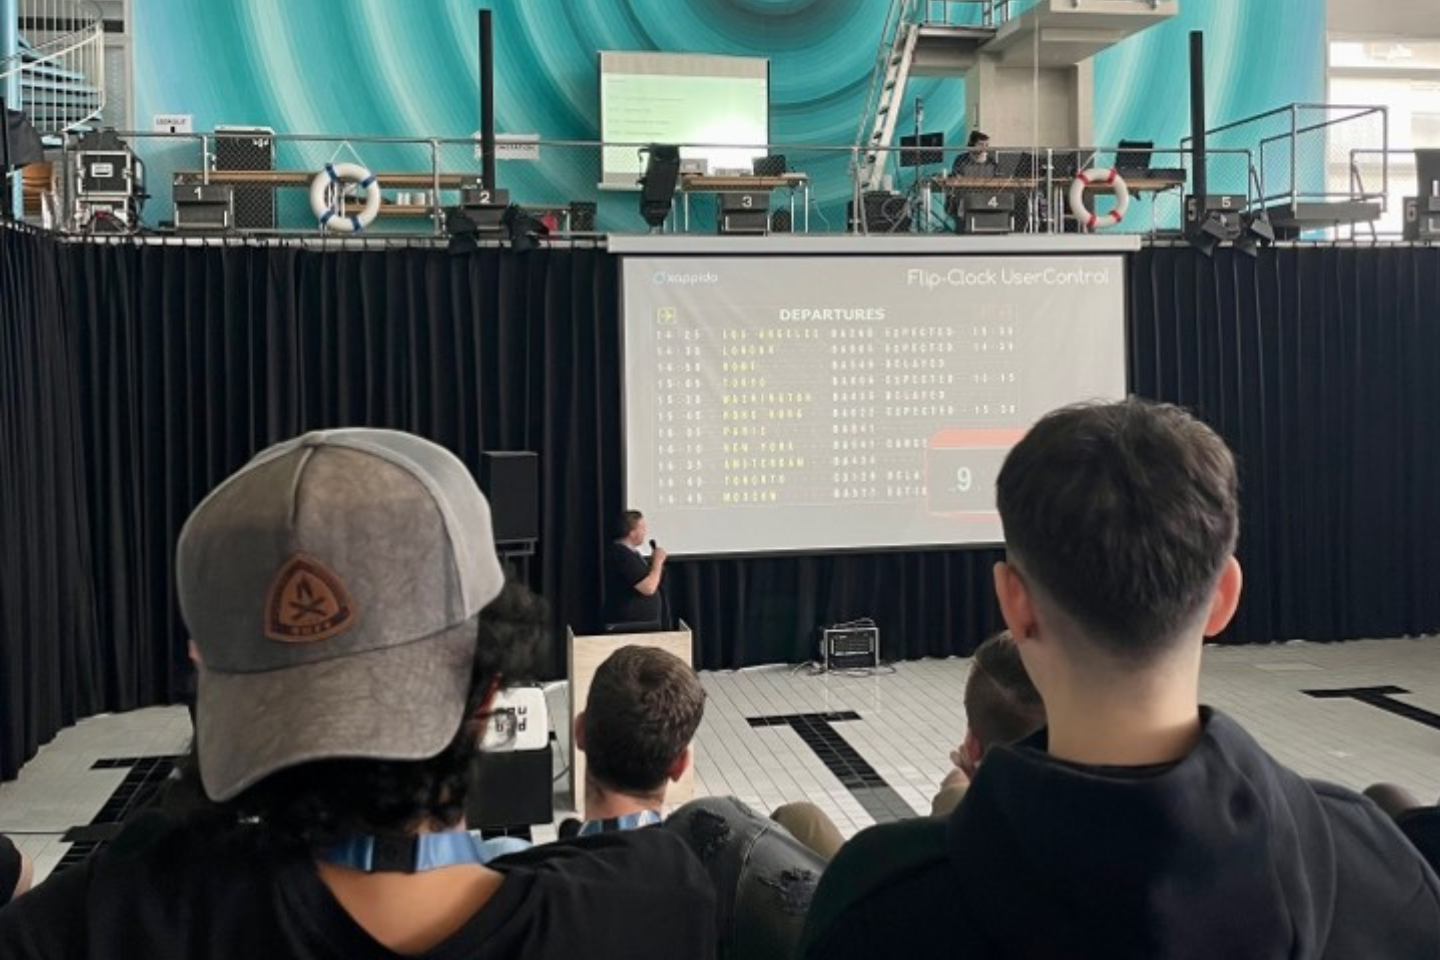 Zuhörerschaft bei einer Präsentation auf dem 'Young Talents Hackathon' in der Schweiz, mit Fokus auf einem Vortragenden, der eine Flip-Clock UserControl demonstriert.